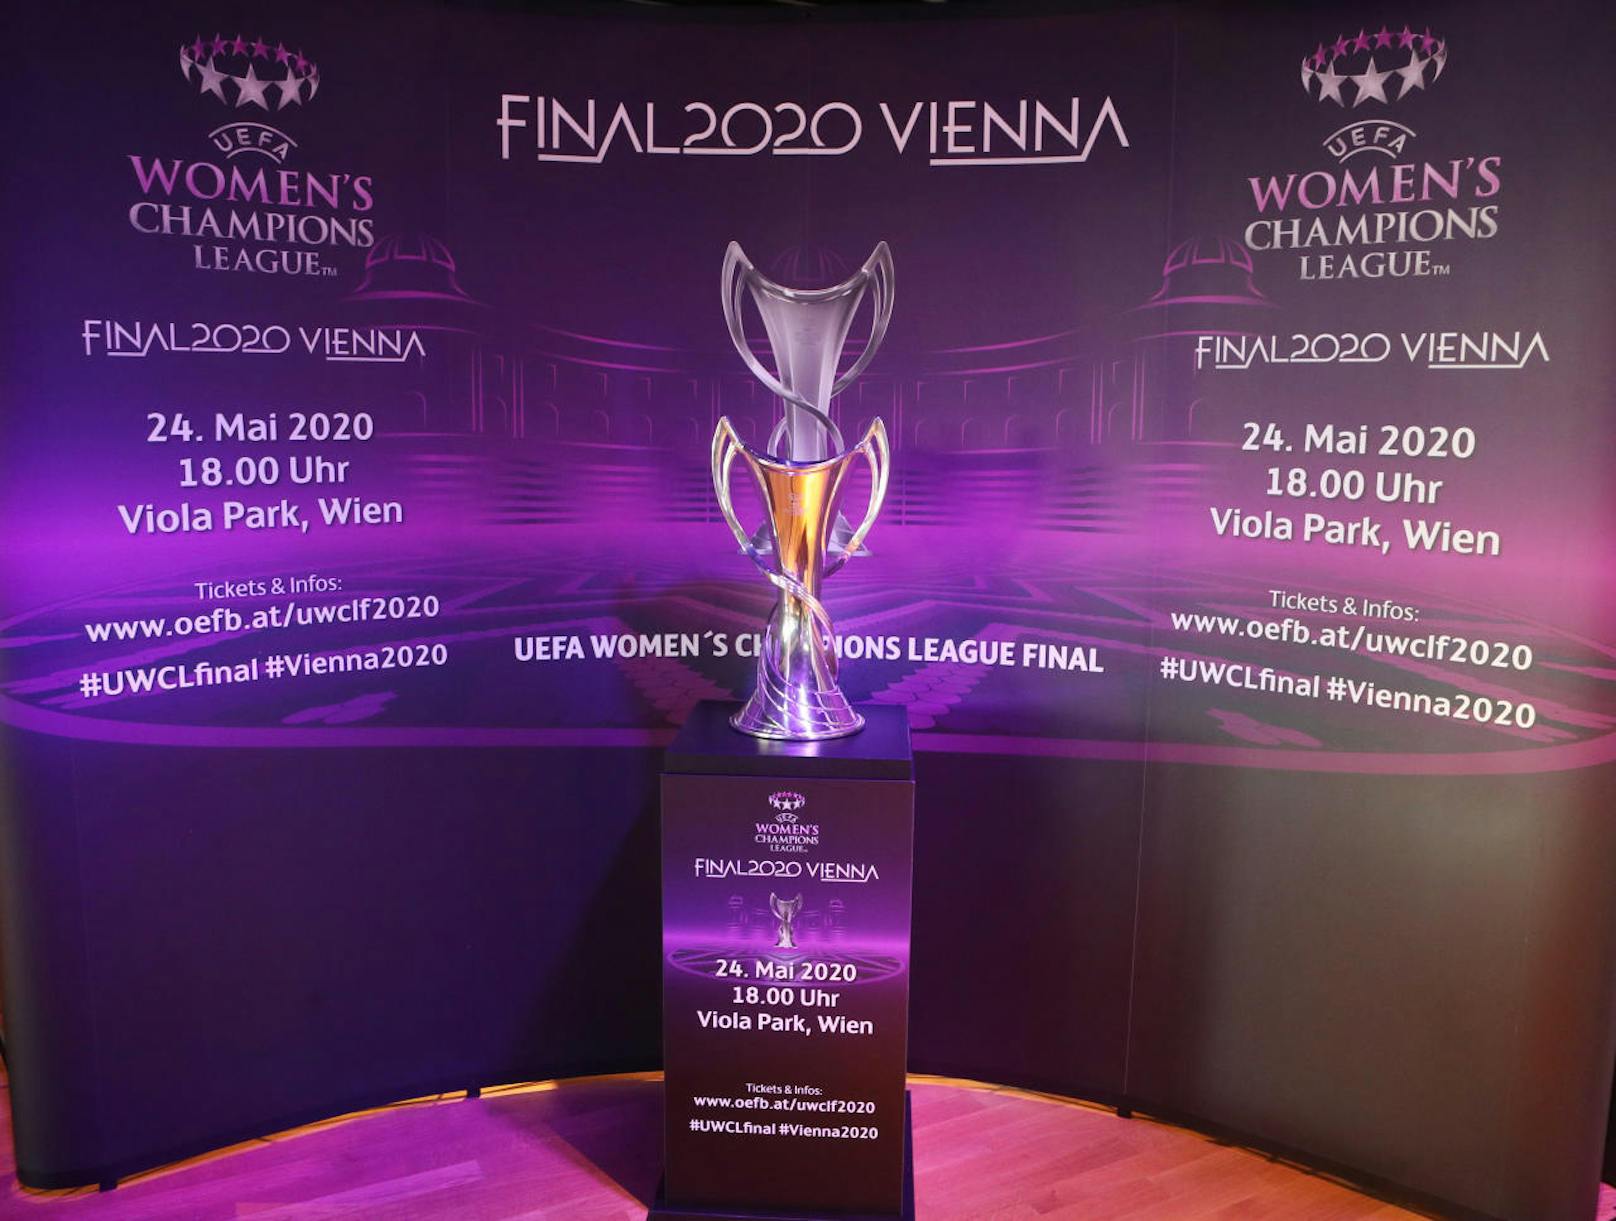 Das <b>Champions-League-Finale der Damen</b> findet am <b>24. Mai 2020 in Wien</b> statt, nämlich in der Generali Arena.